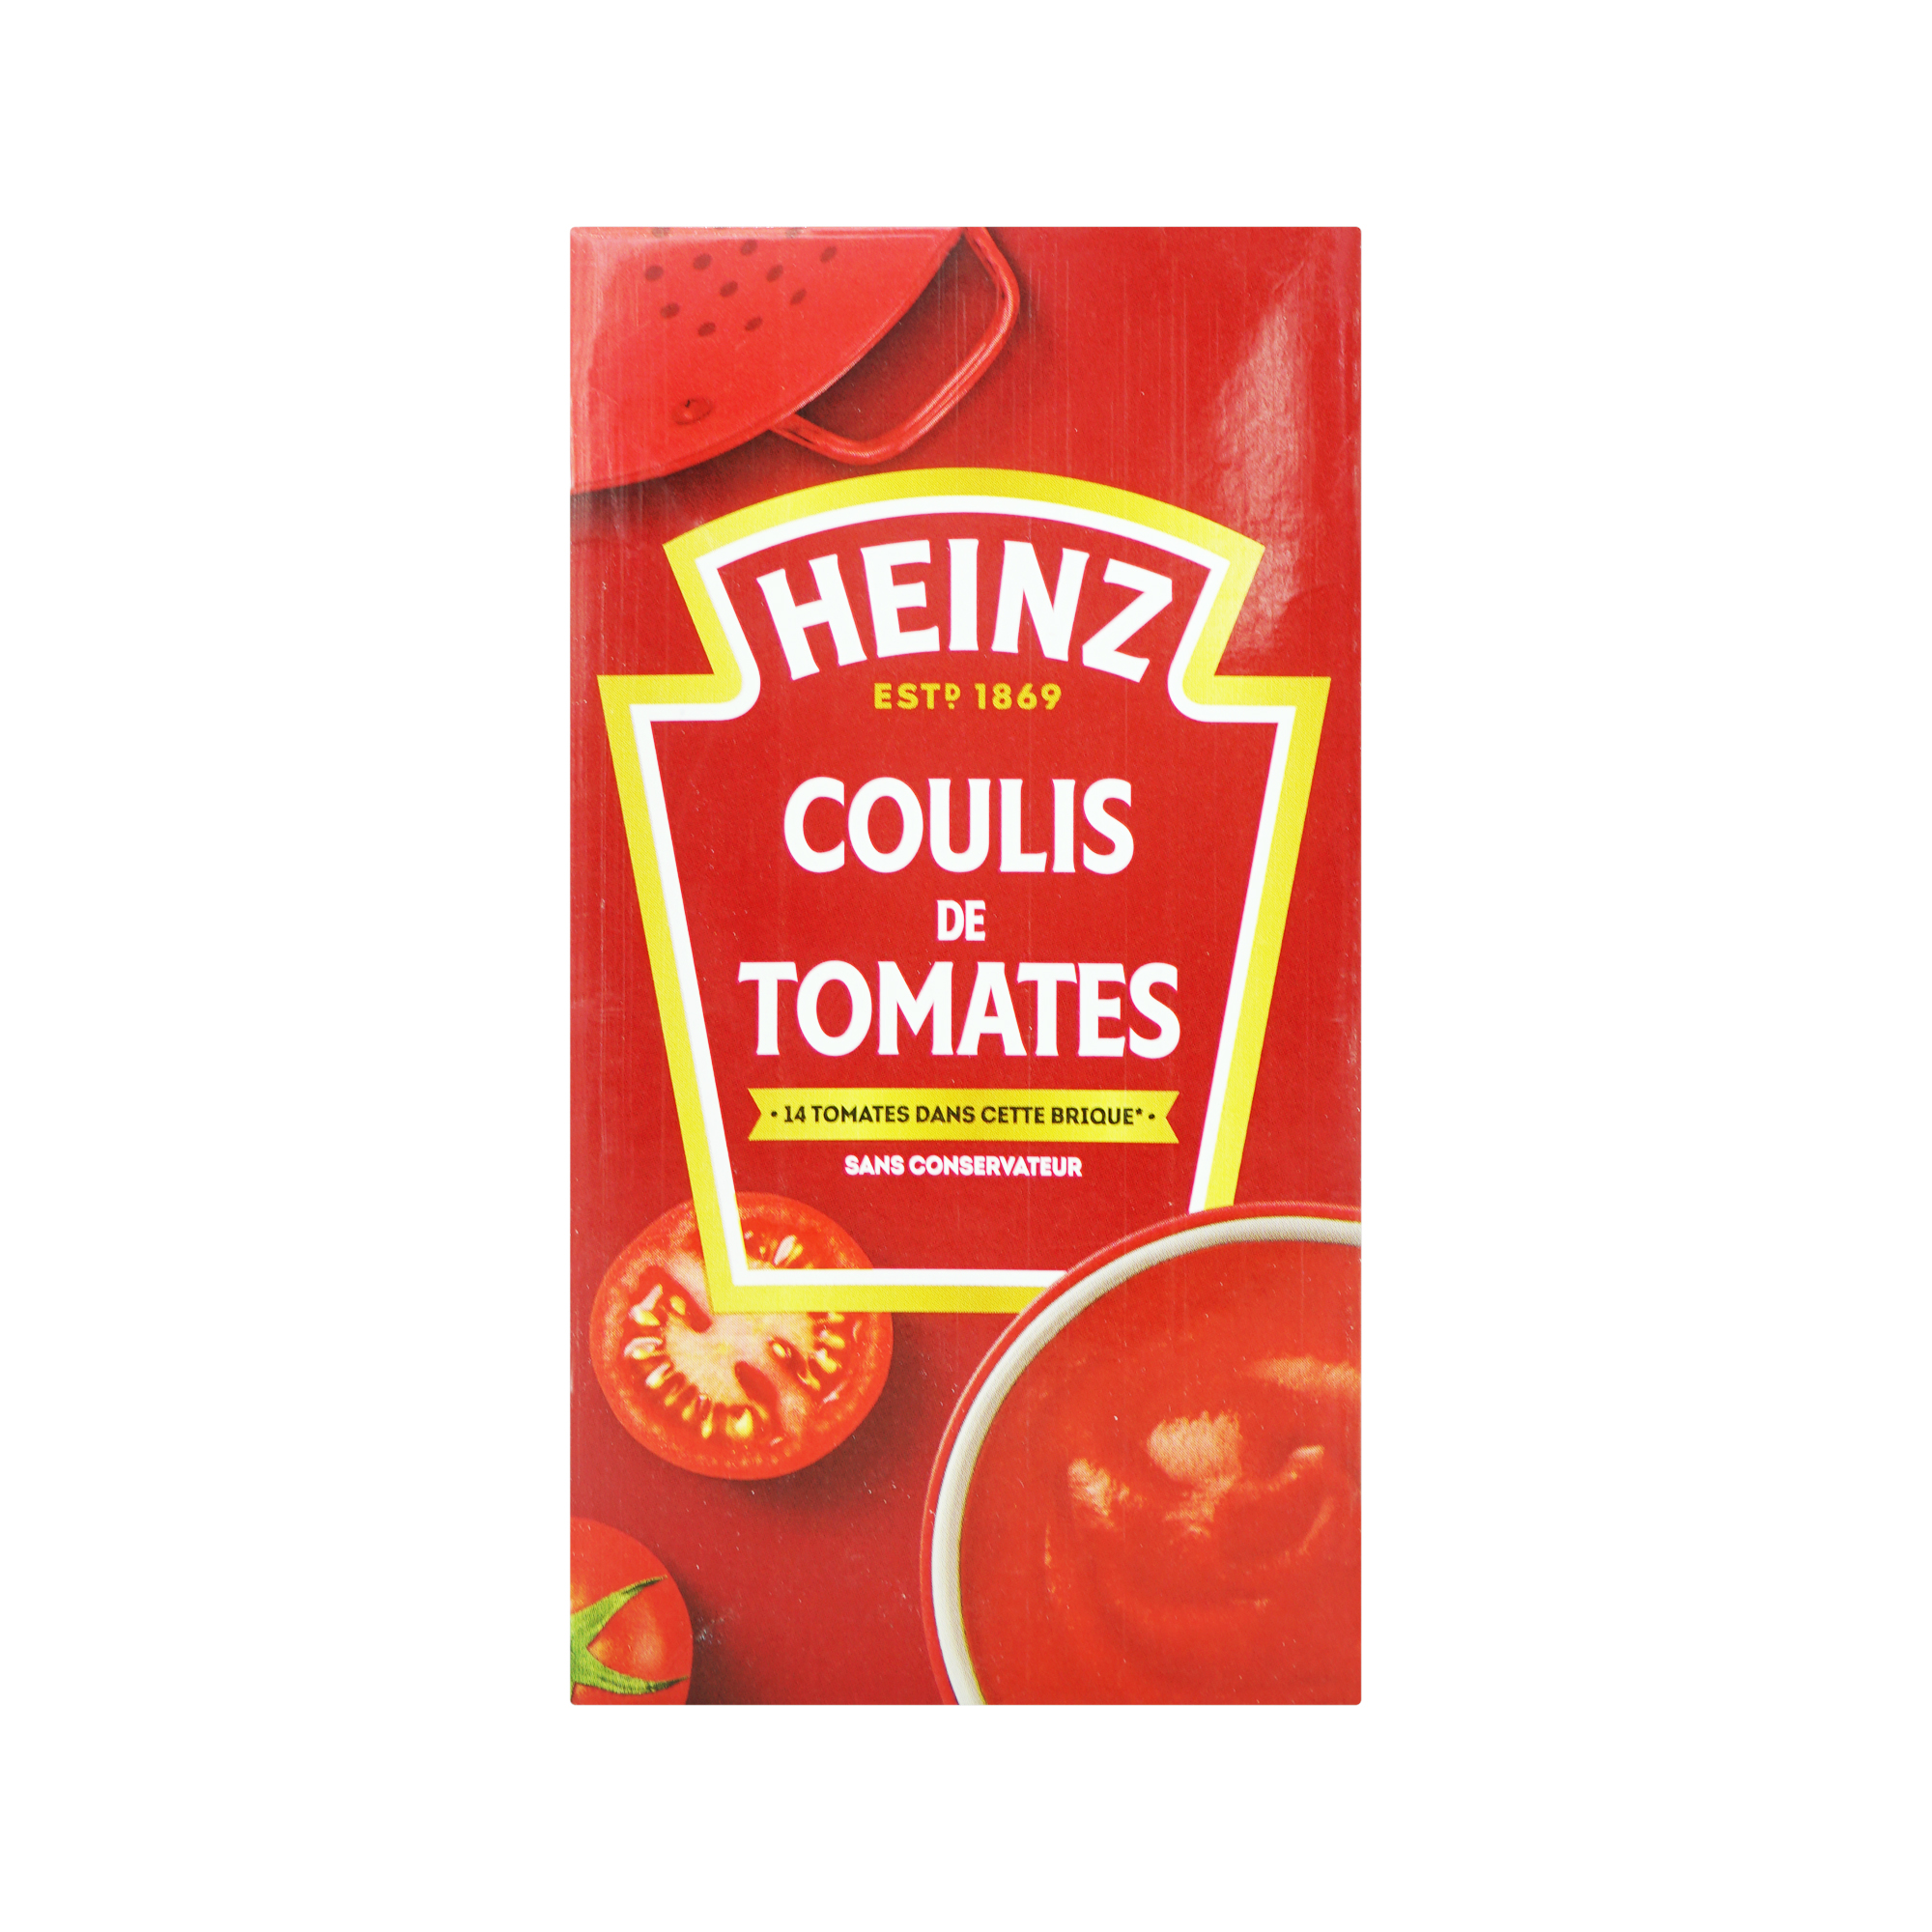 Heinz Tomato Coulis (520g)